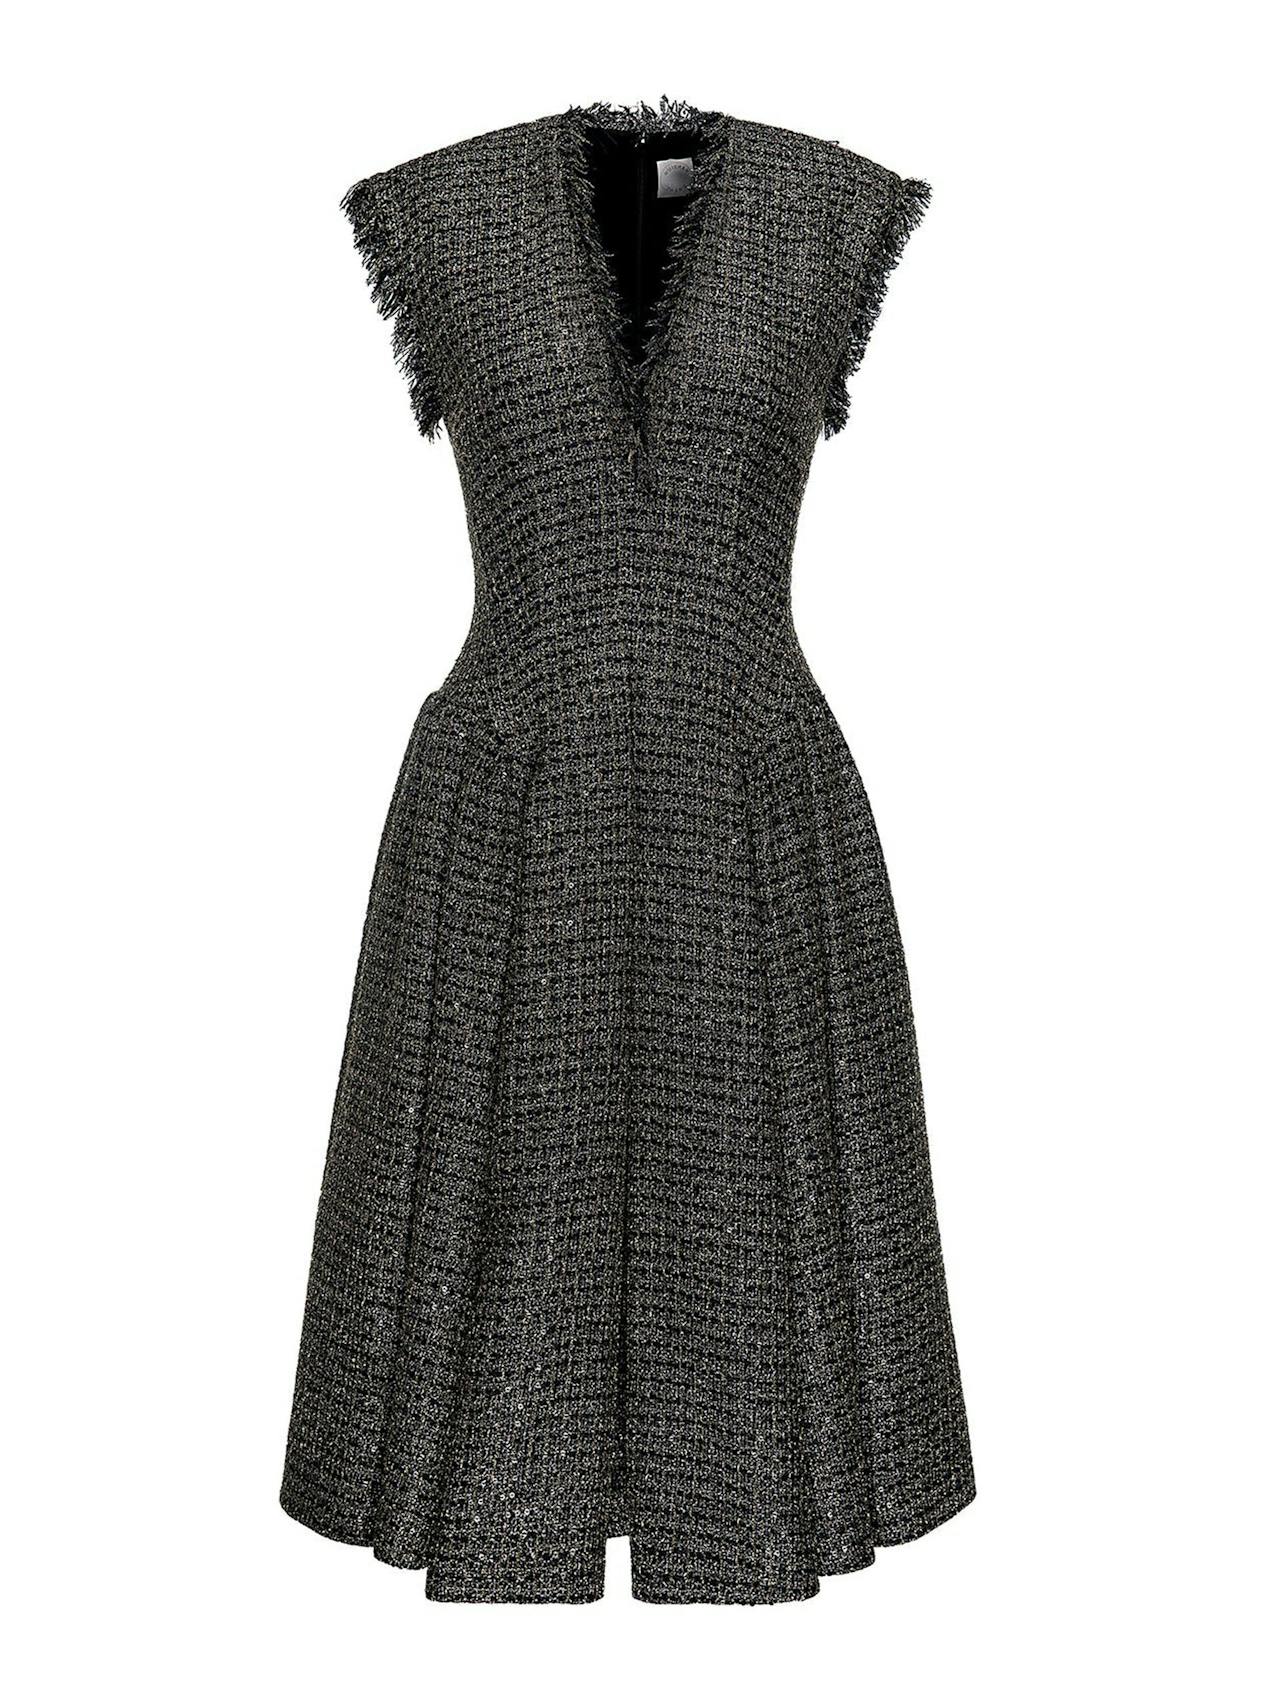 Black gold lurex tweed Madame dress